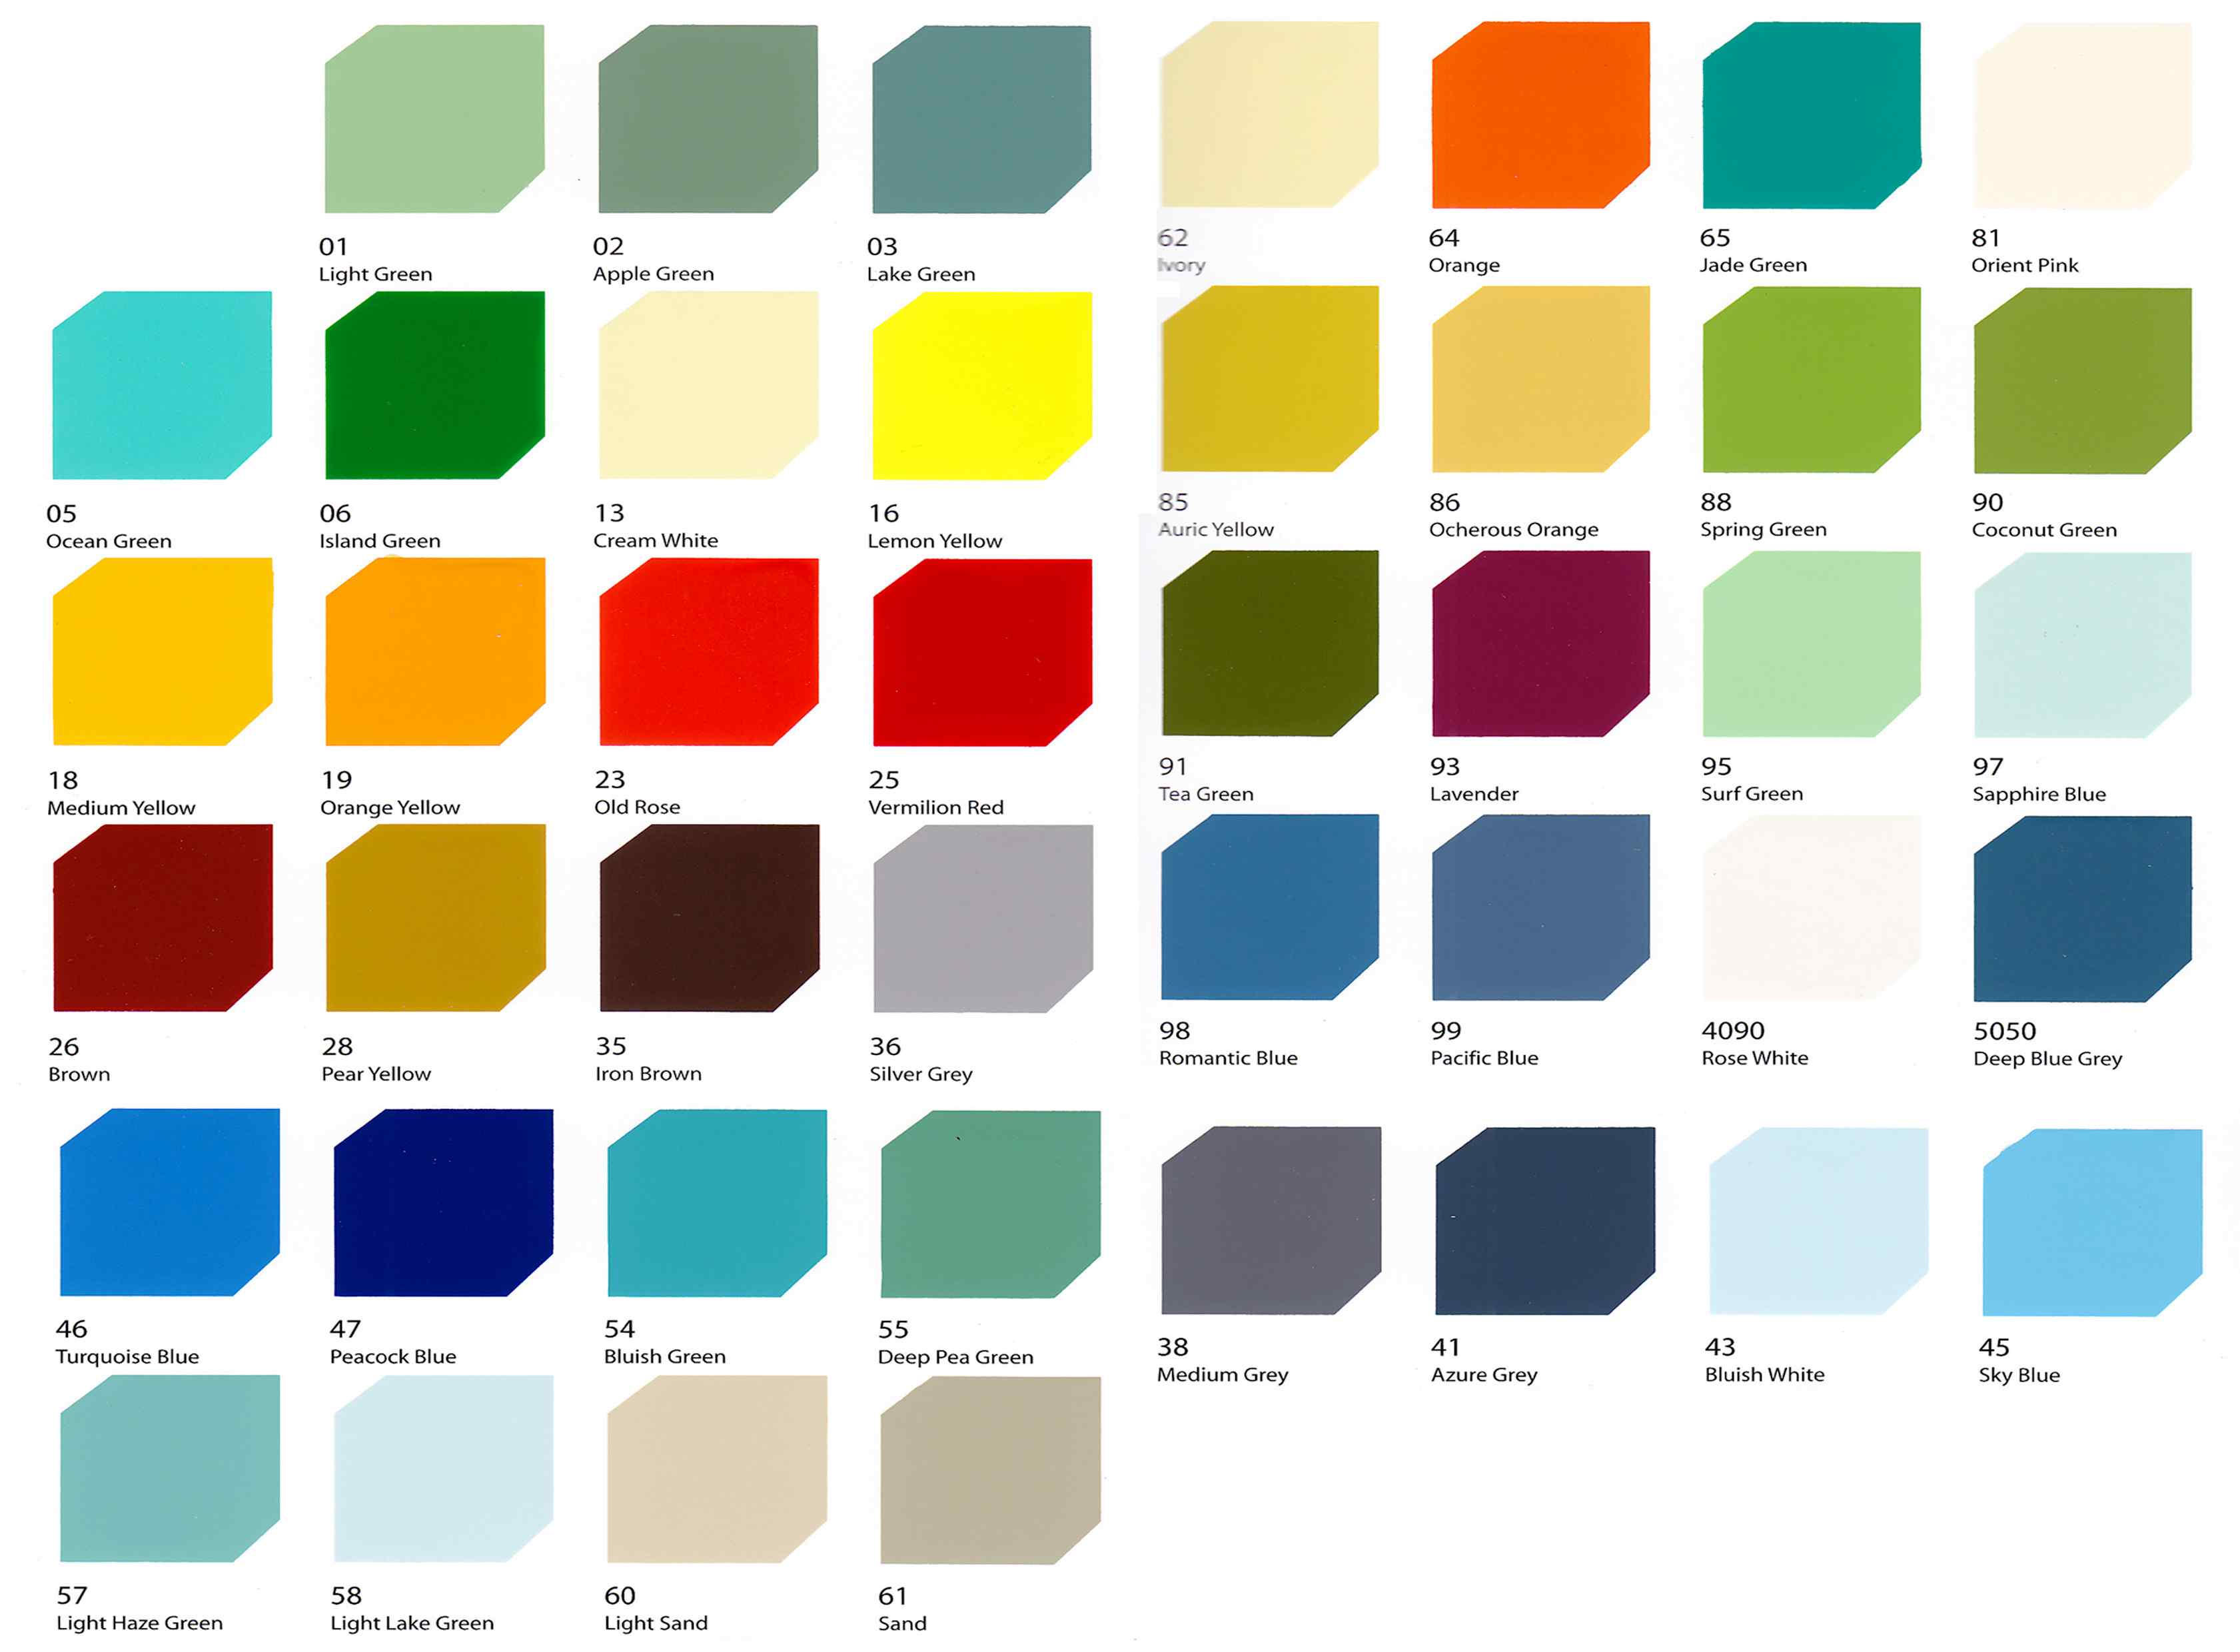 Sơn Epoxy Rainbow: Sơn Epoxy Rainbow đến từ thương hiệu uy tín và chất lượng cao, với khả năng bảo vệ bề mặt tuyệt vời và màu sắc đa dạng. Bạn có thể dùng sản phẩm này để tạo nên những họa tiết, chữ viết hay hình ảnh độc đáo cho không gian của mình.